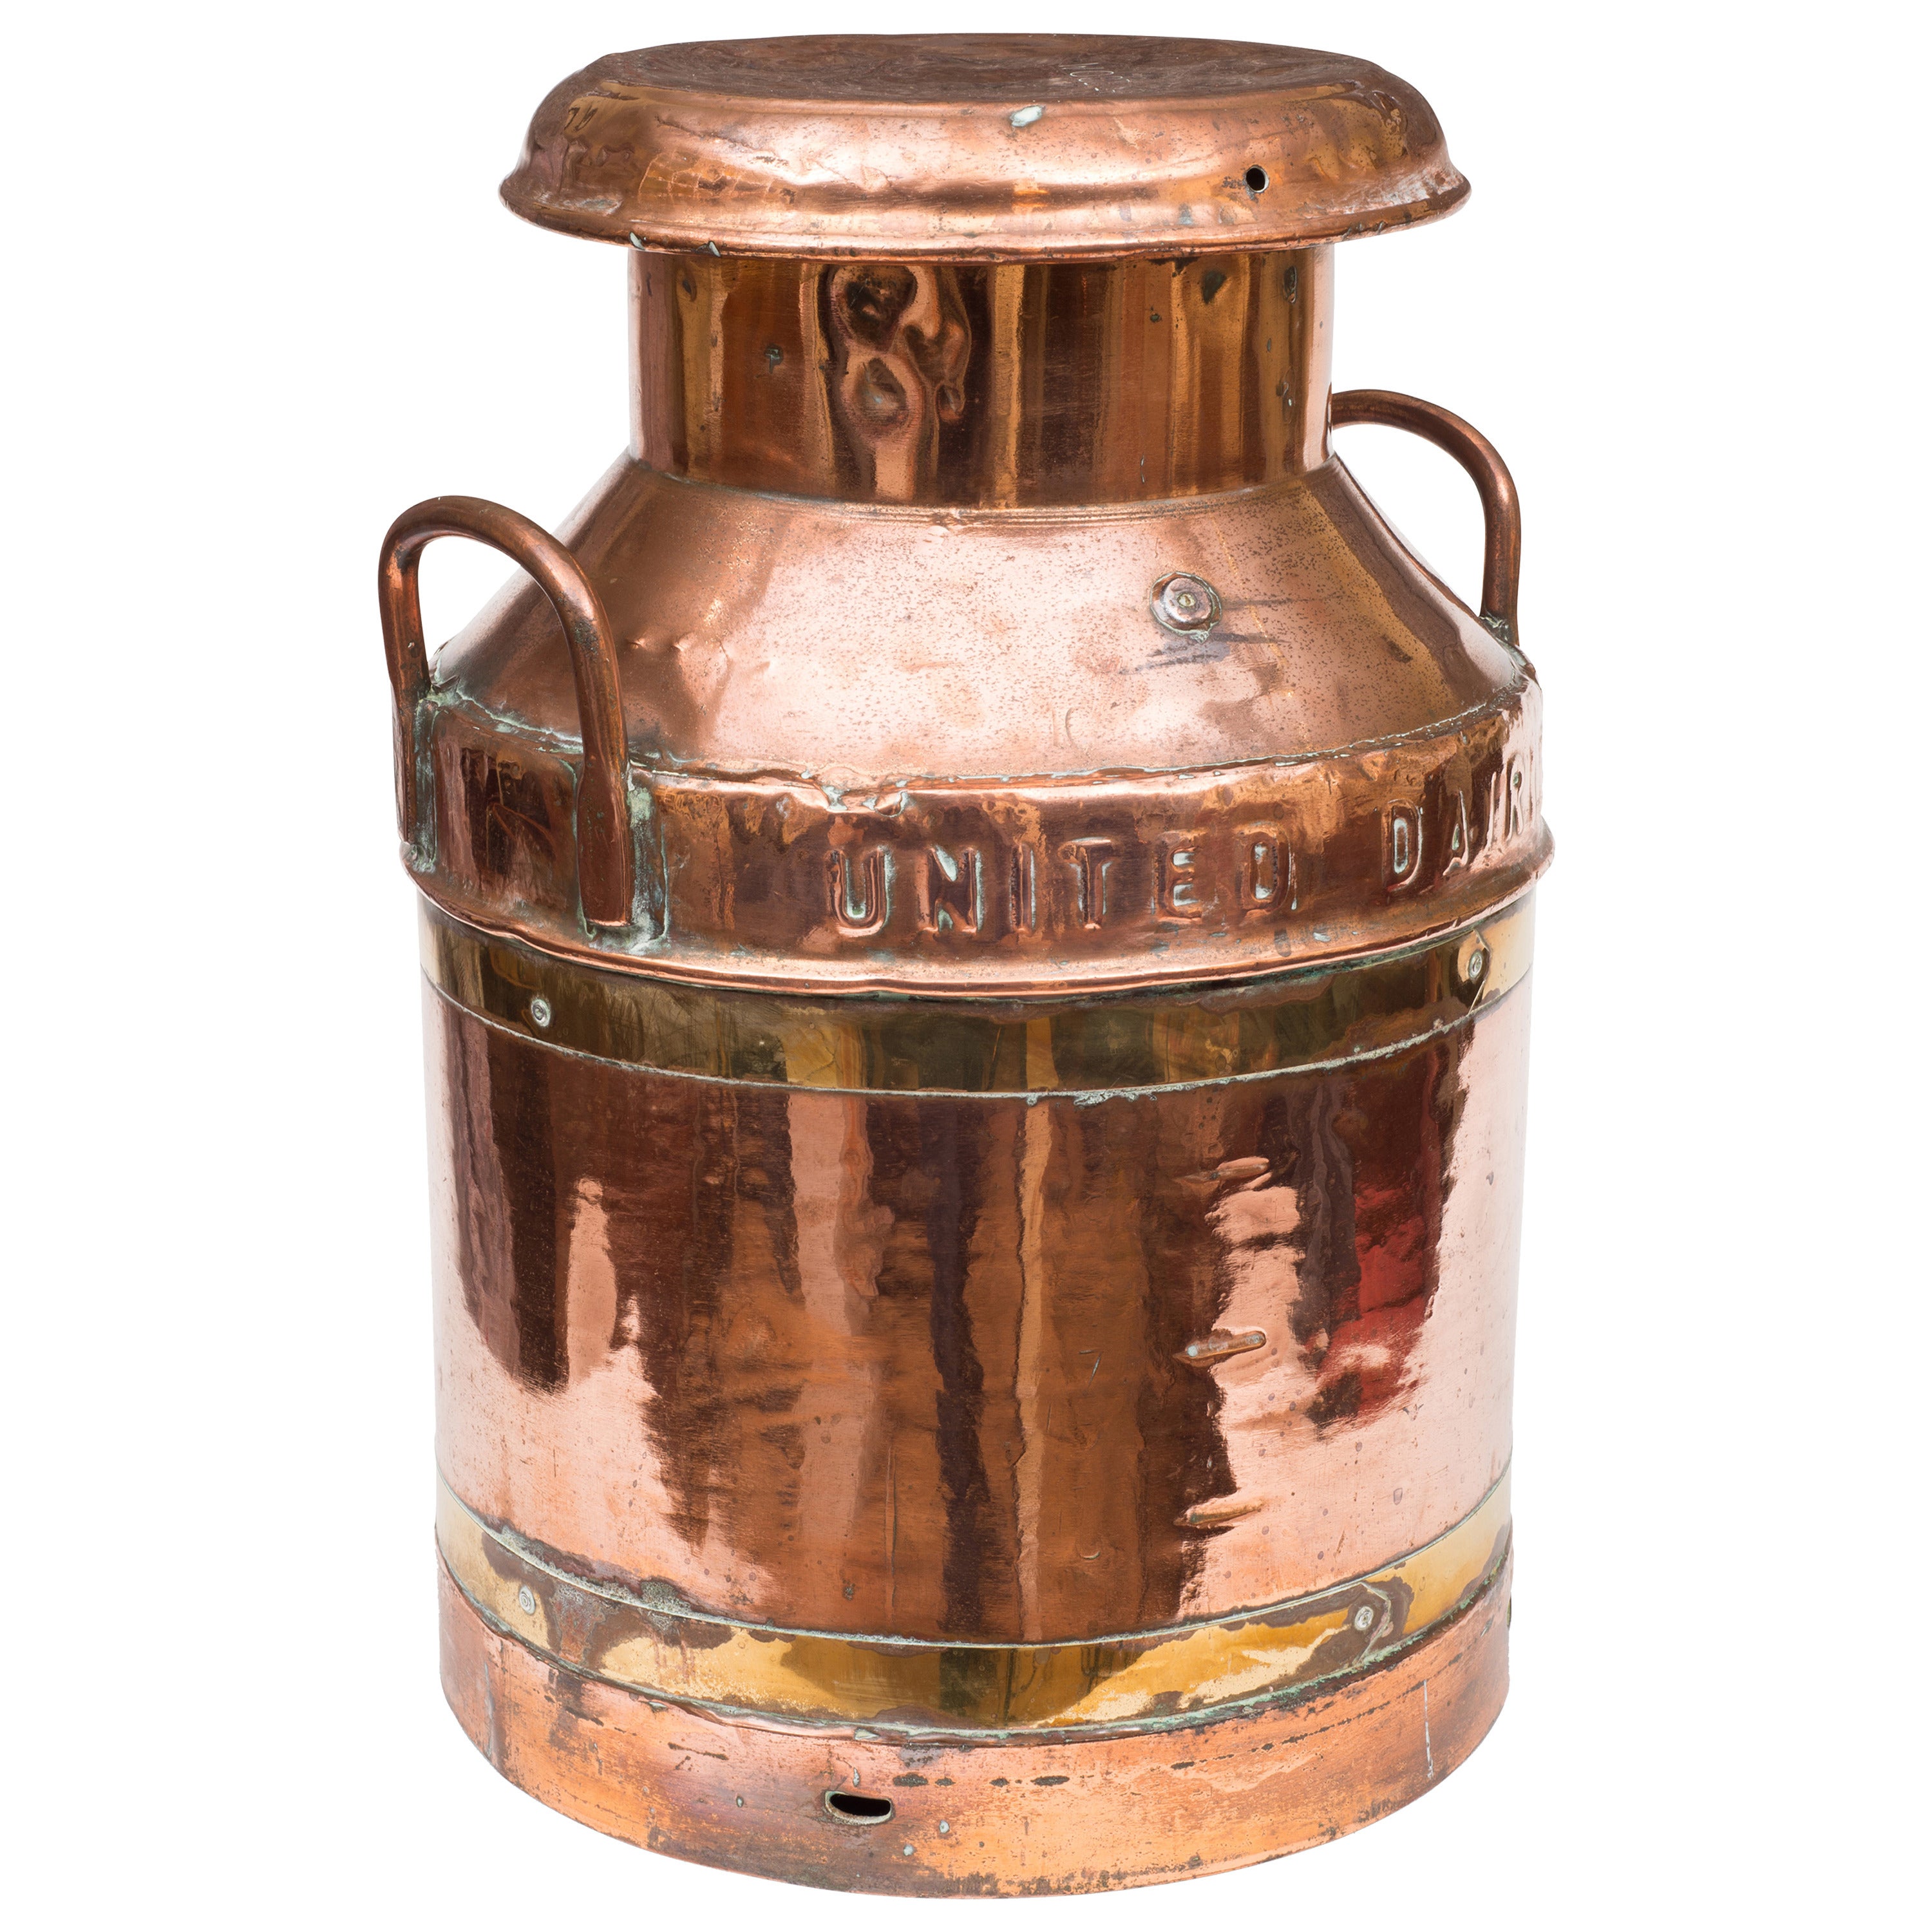 A brass and copper milk churn